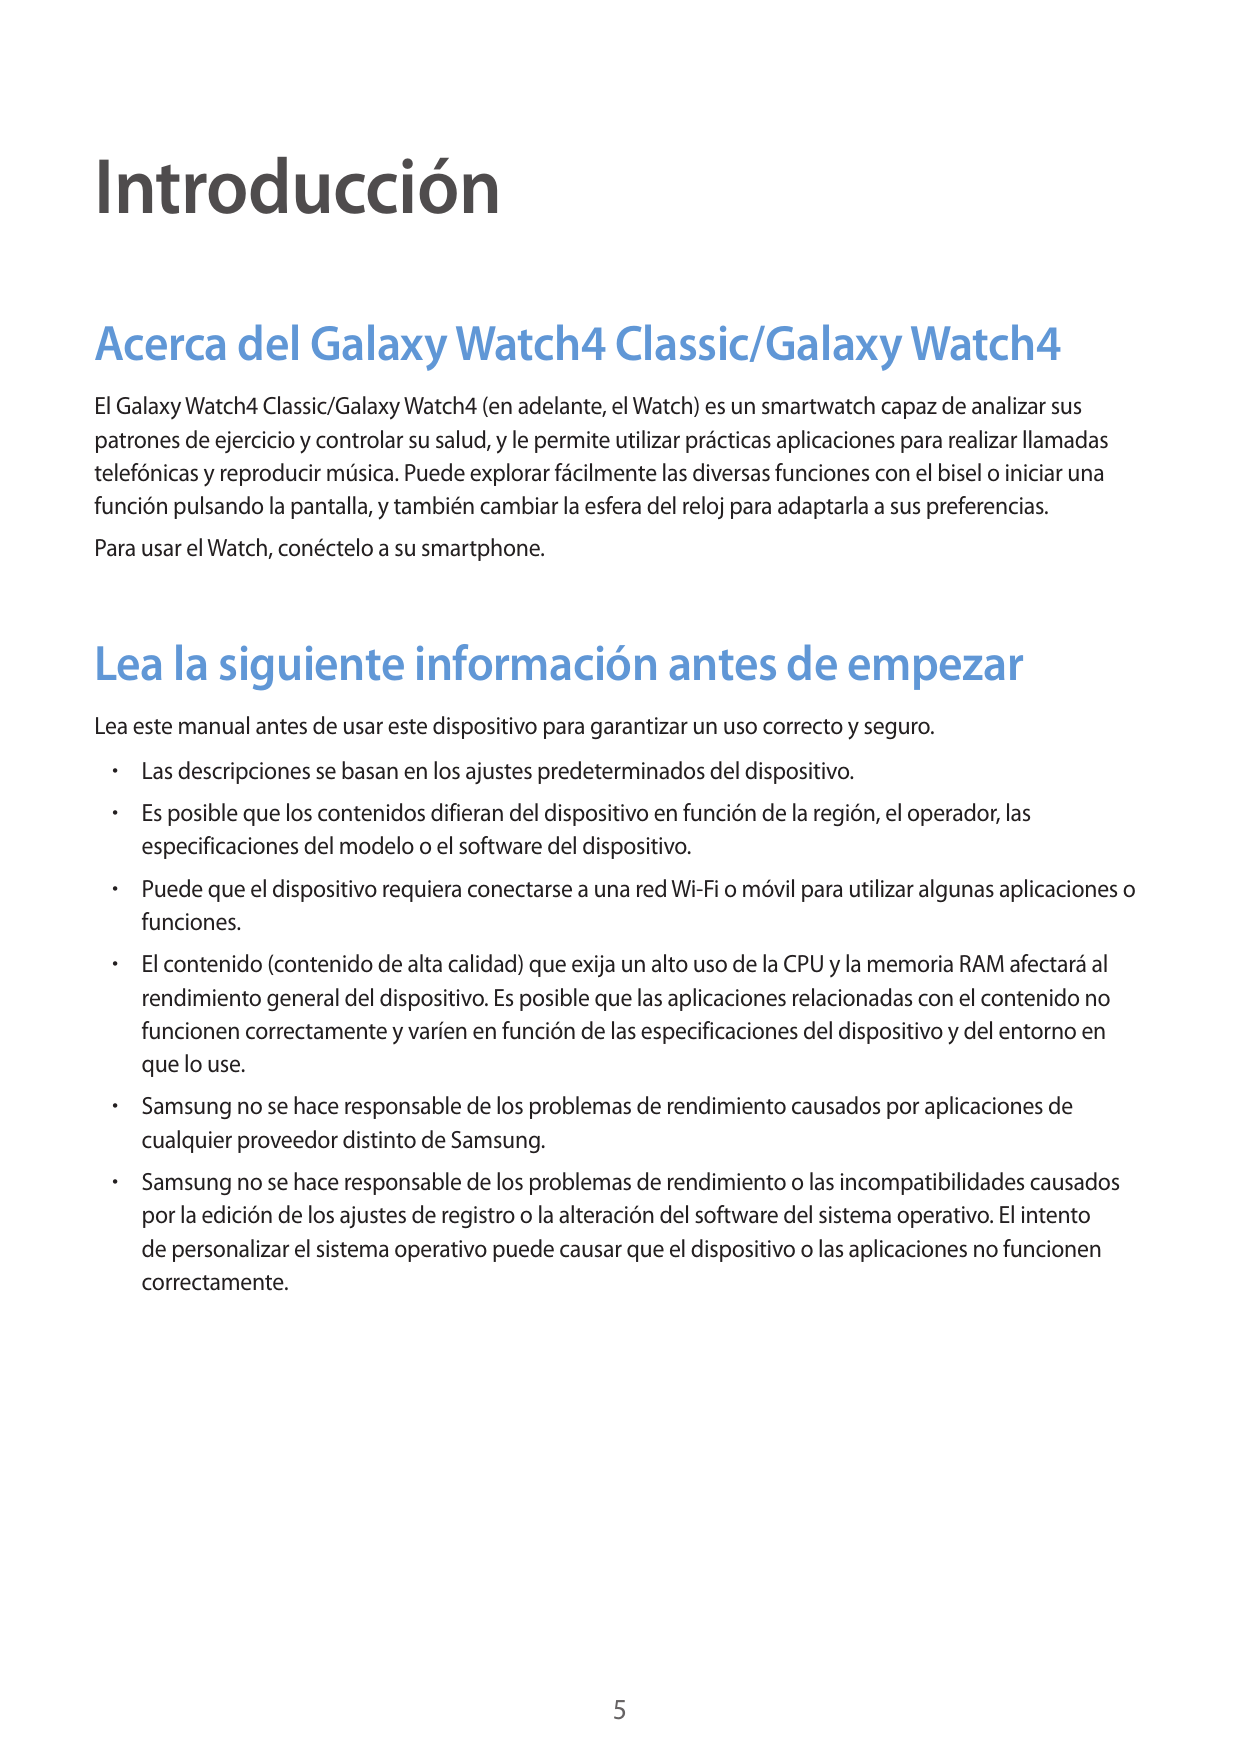 IntroducciónAcerca del Galaxy Watch4 Classic/Galaxy Watch4El Galaxy Watch4 Classic/Galaxy Watch4 (en adelante, el Watch) es un s